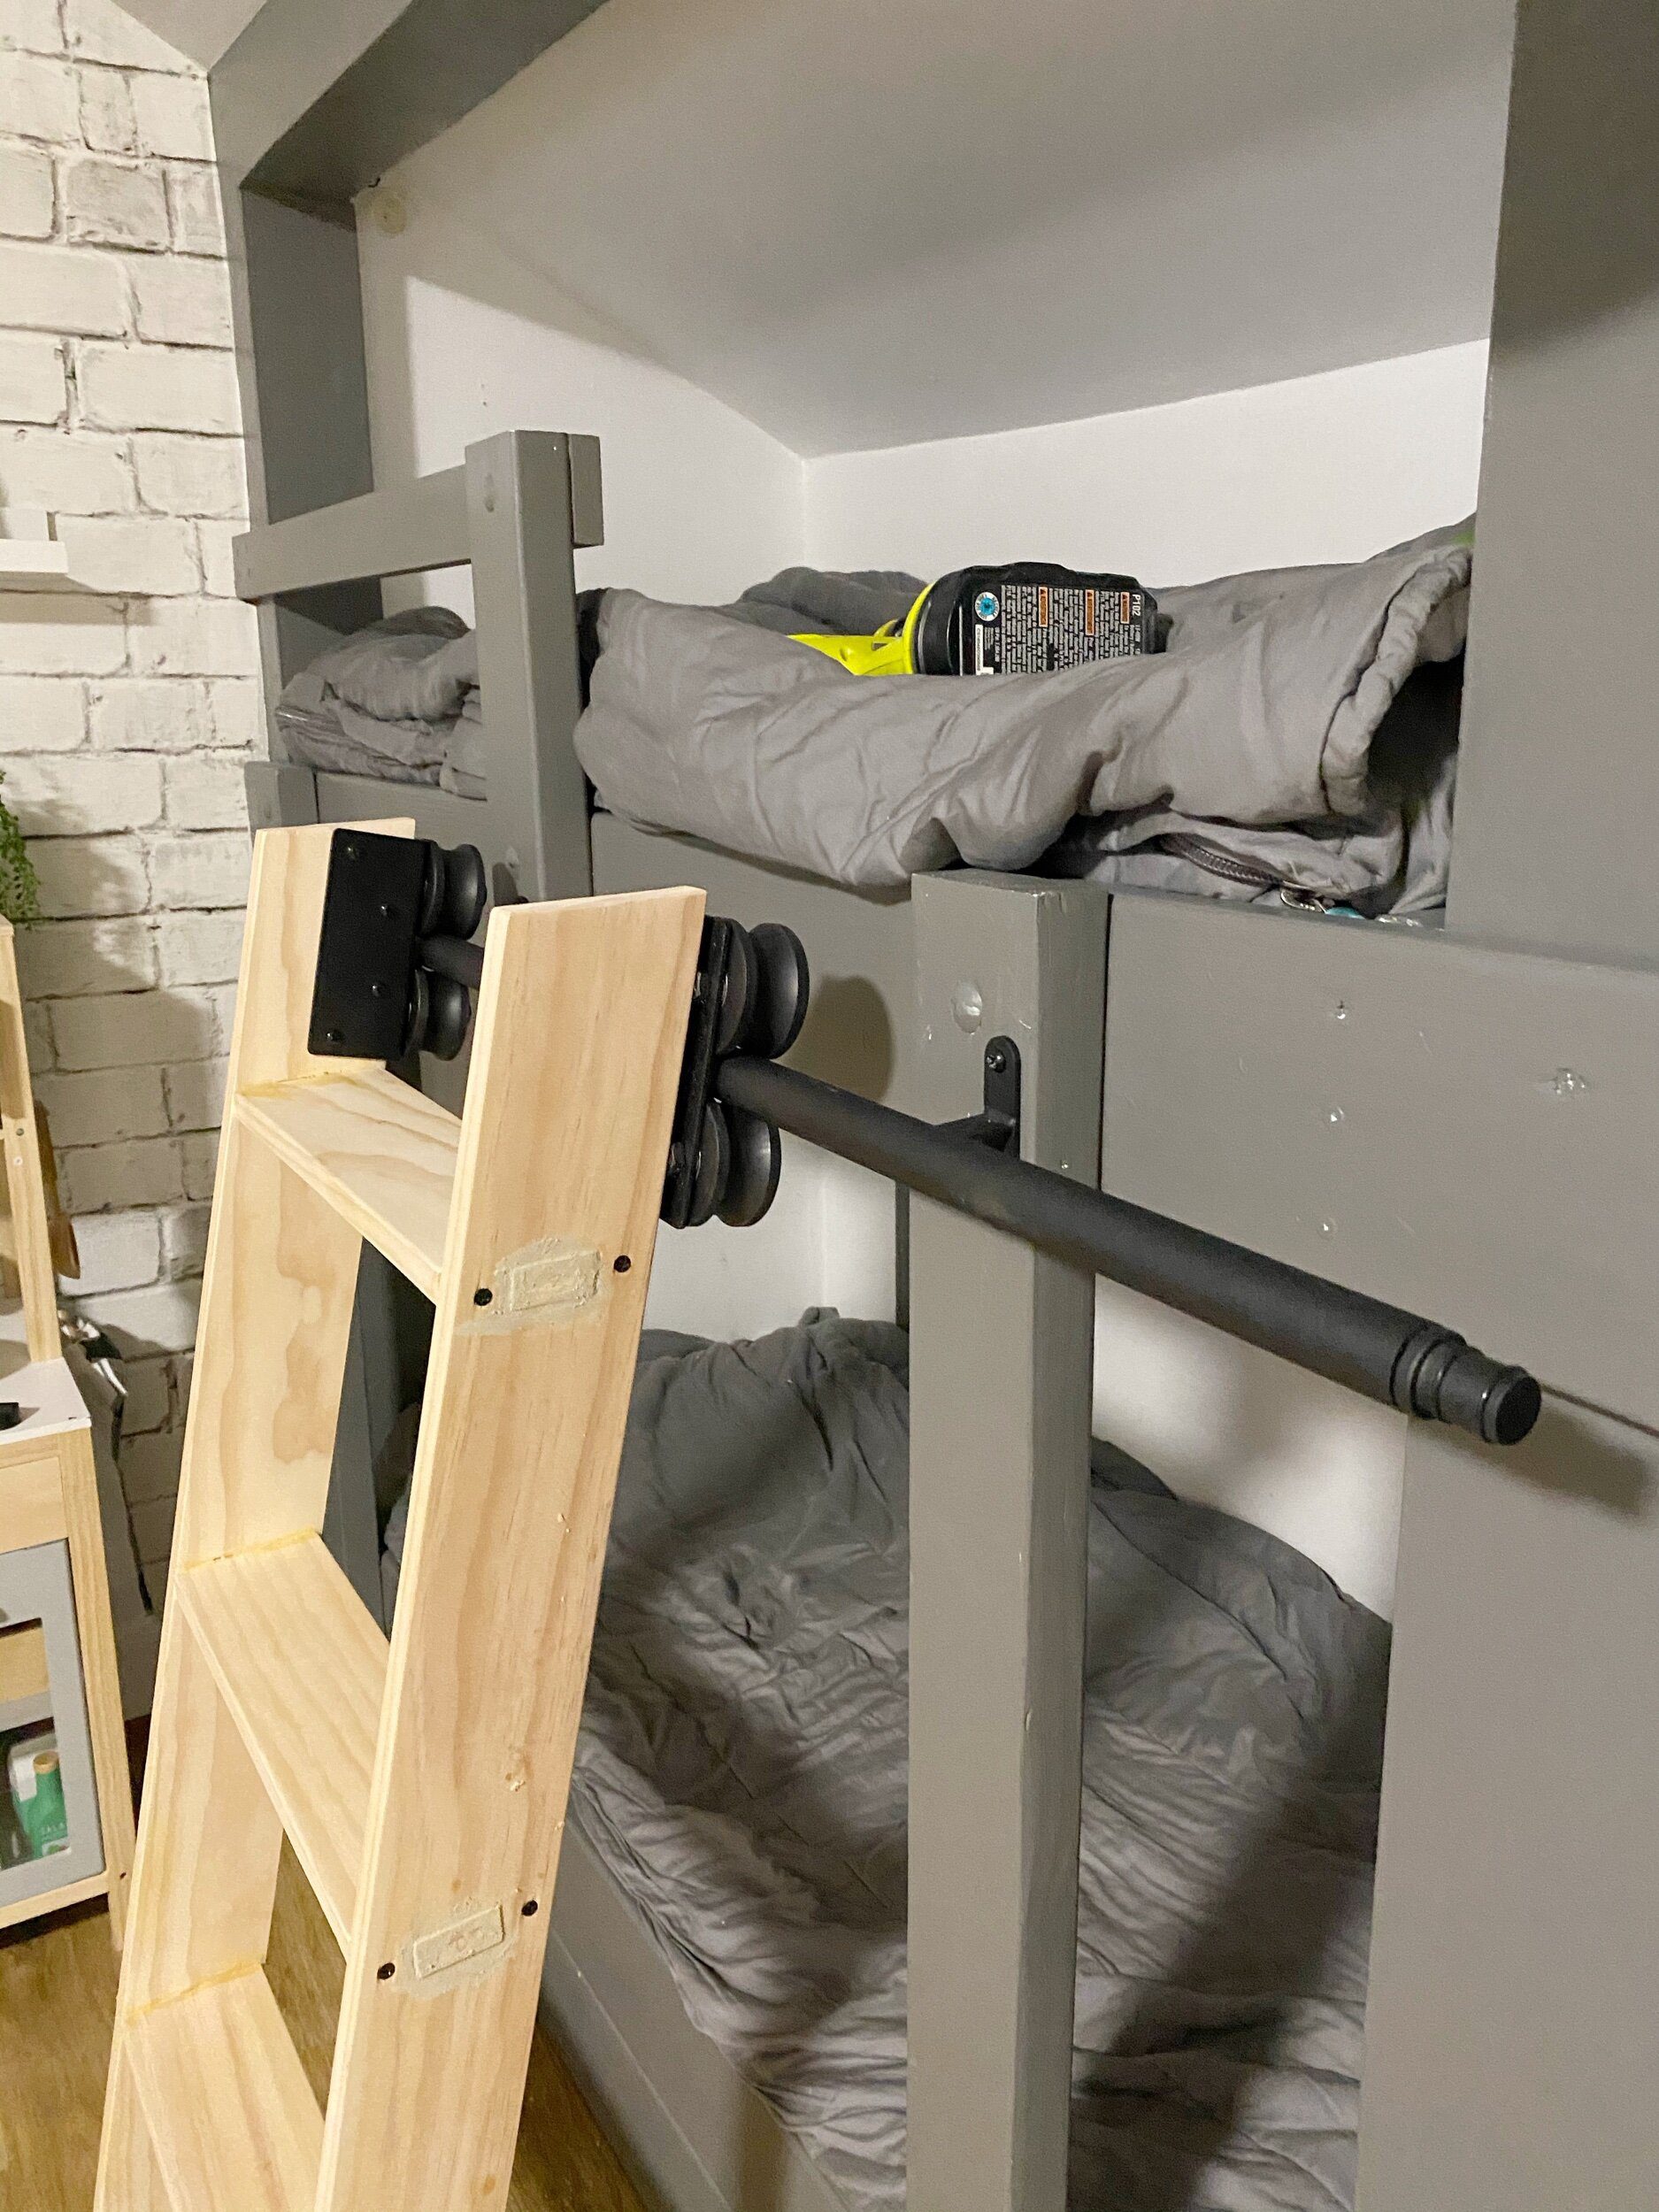 Diy Bunk Bed Library Ladder, Bunk Bed Steps Plans